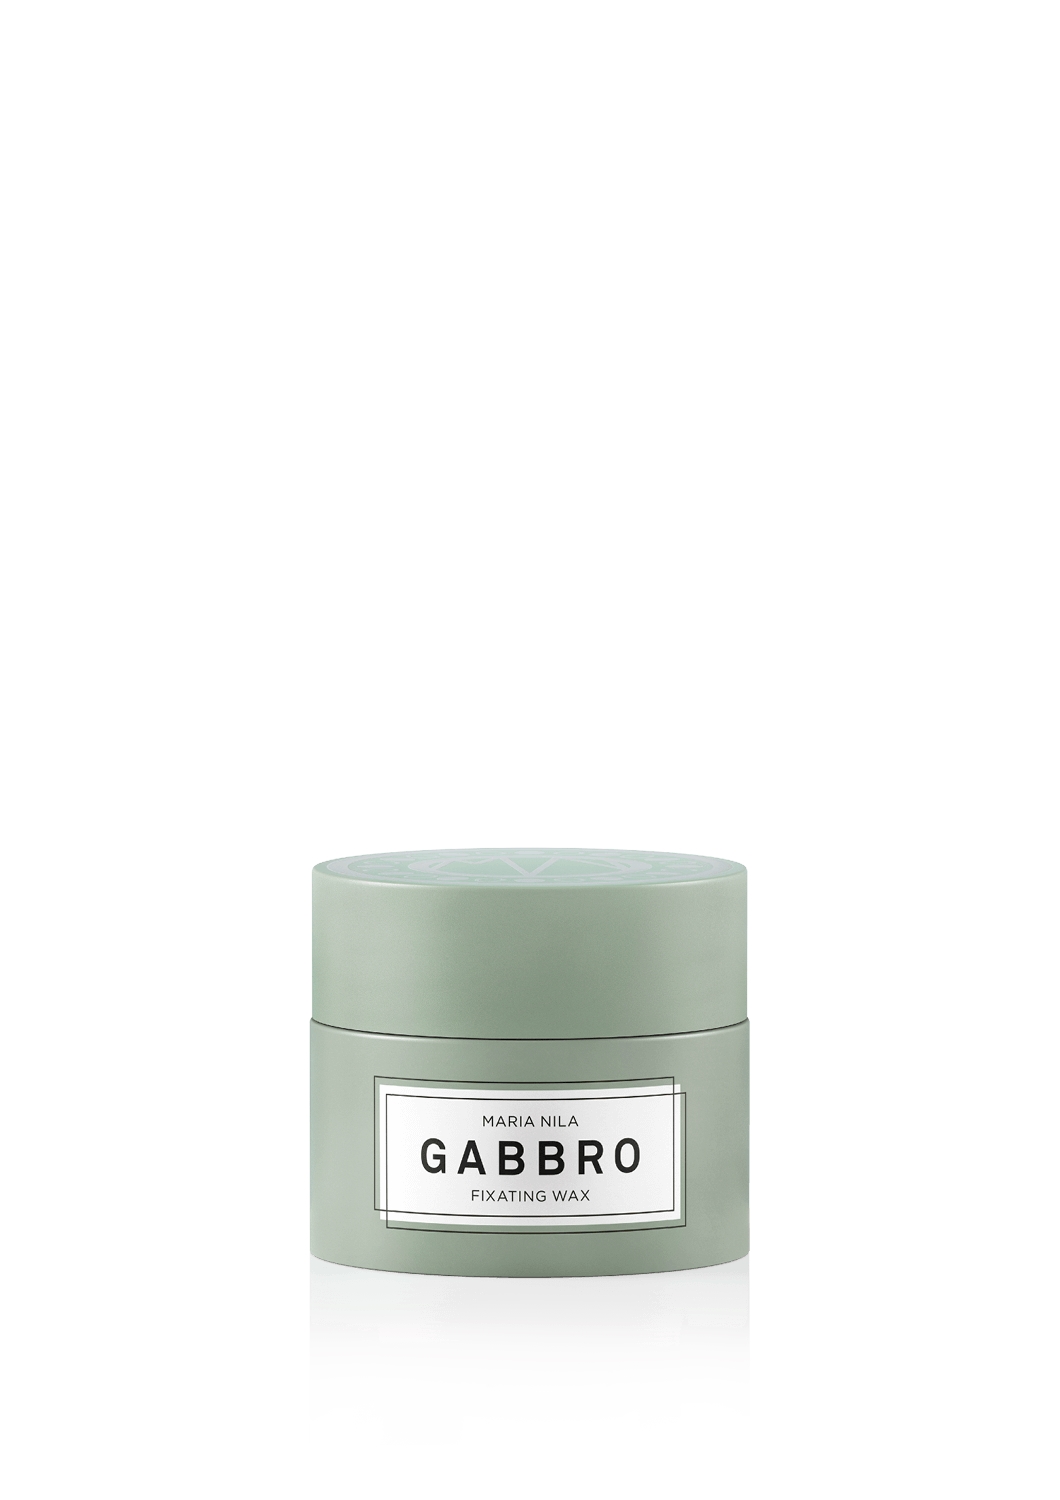  Gabbro Fixating Wax